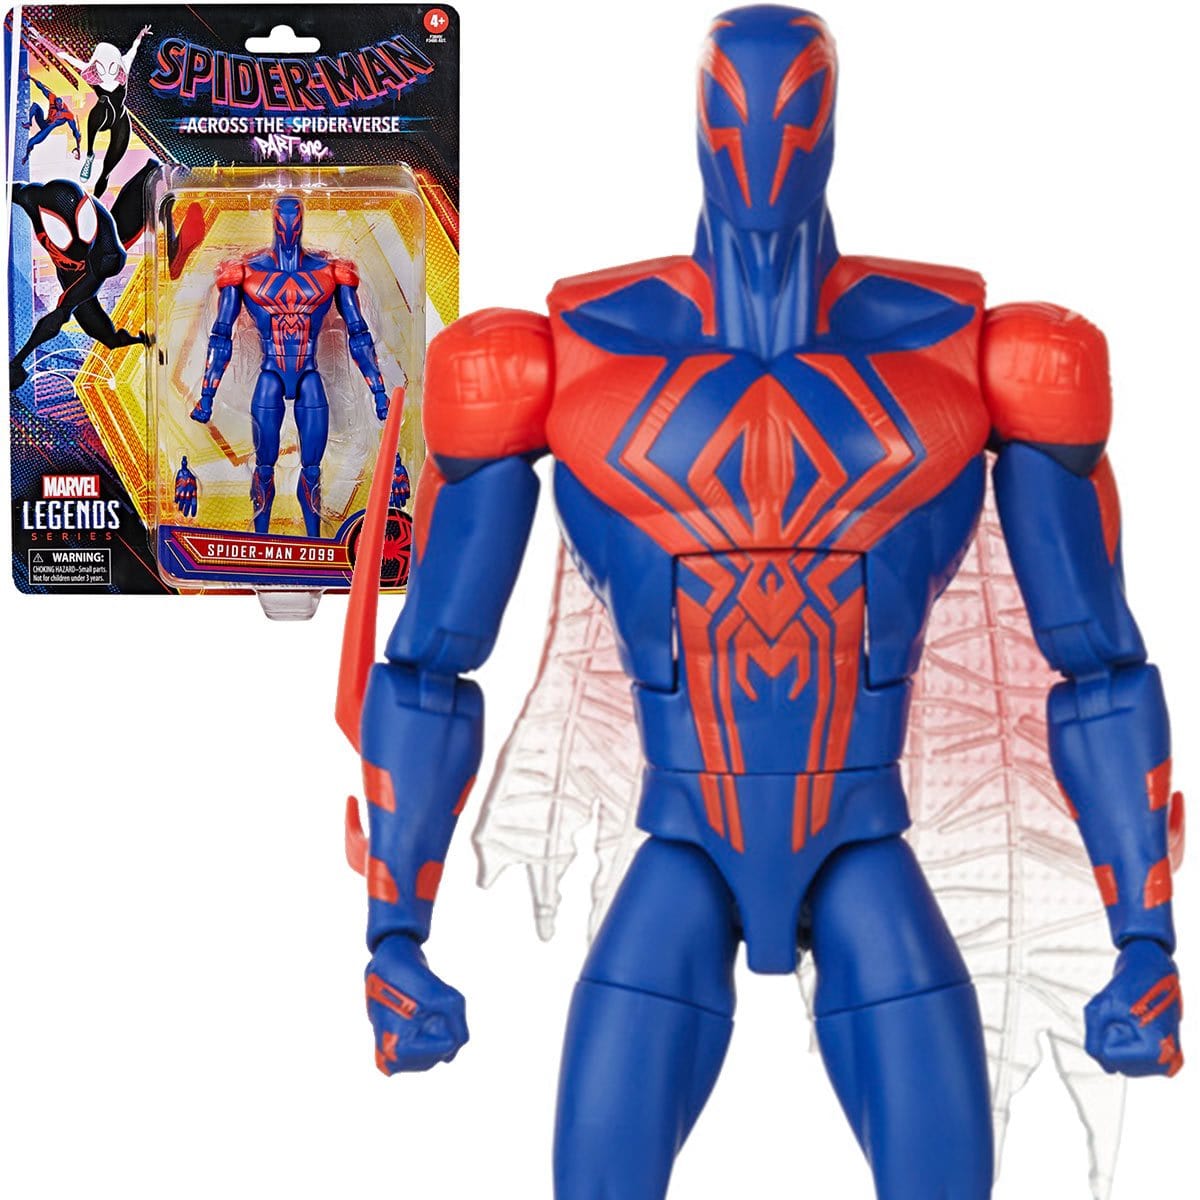 Spider-Man-Retro-Marvel-Legends-Spider-Man-2099-6-Inch-Action-Figure